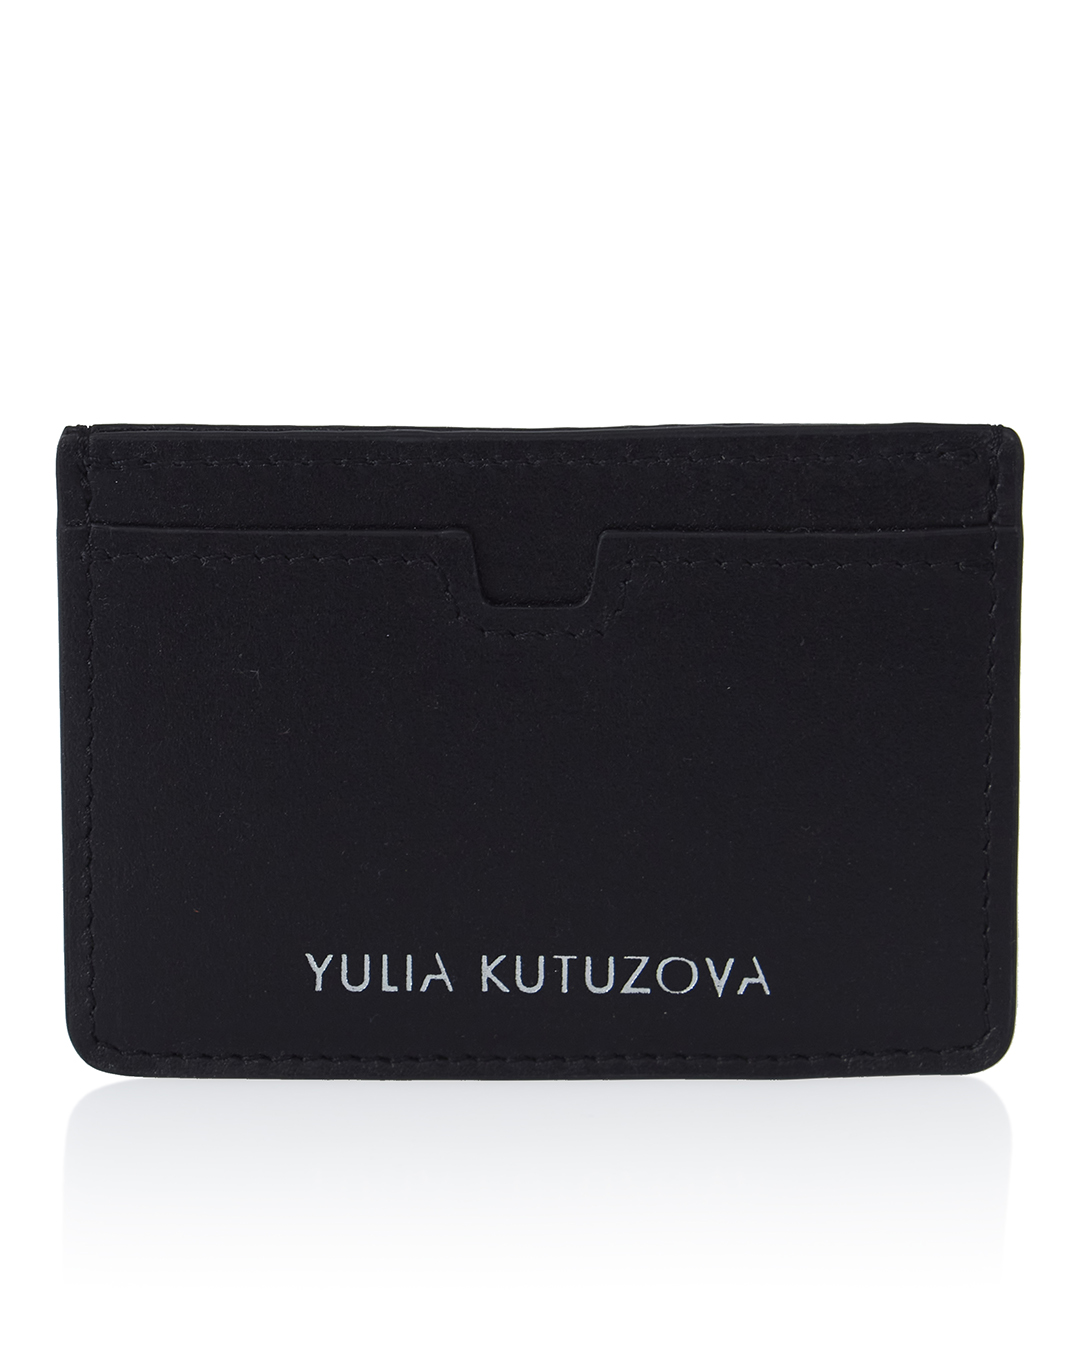 YULIA KUTUZOVA  артикул BLACK22 марки YULIA KUTUZOVA купить за 4100 руб.